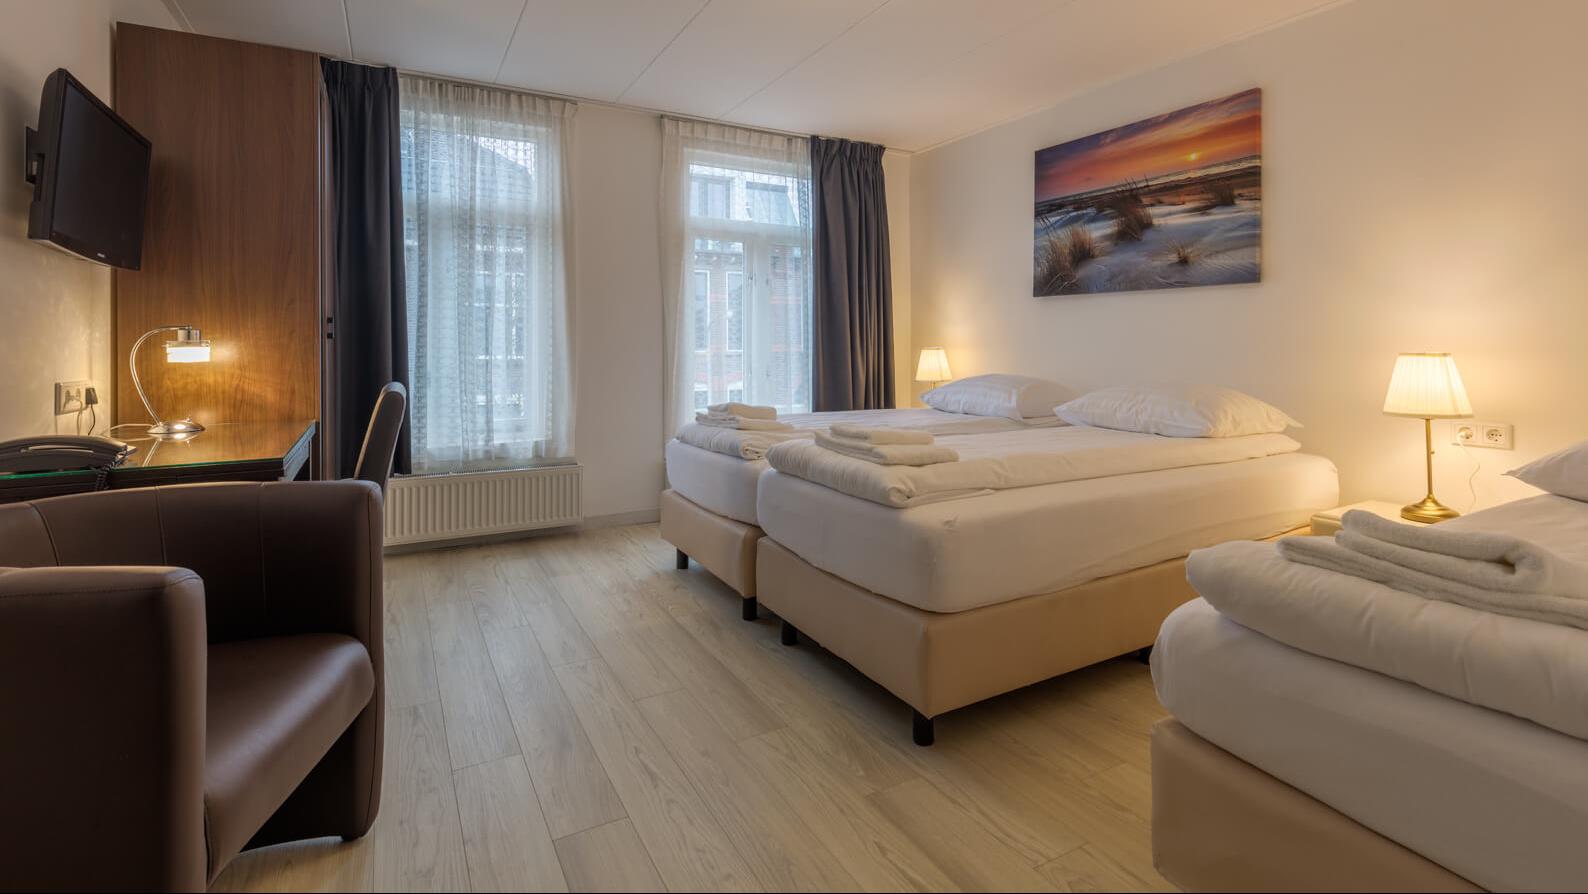 Triple room €120,-